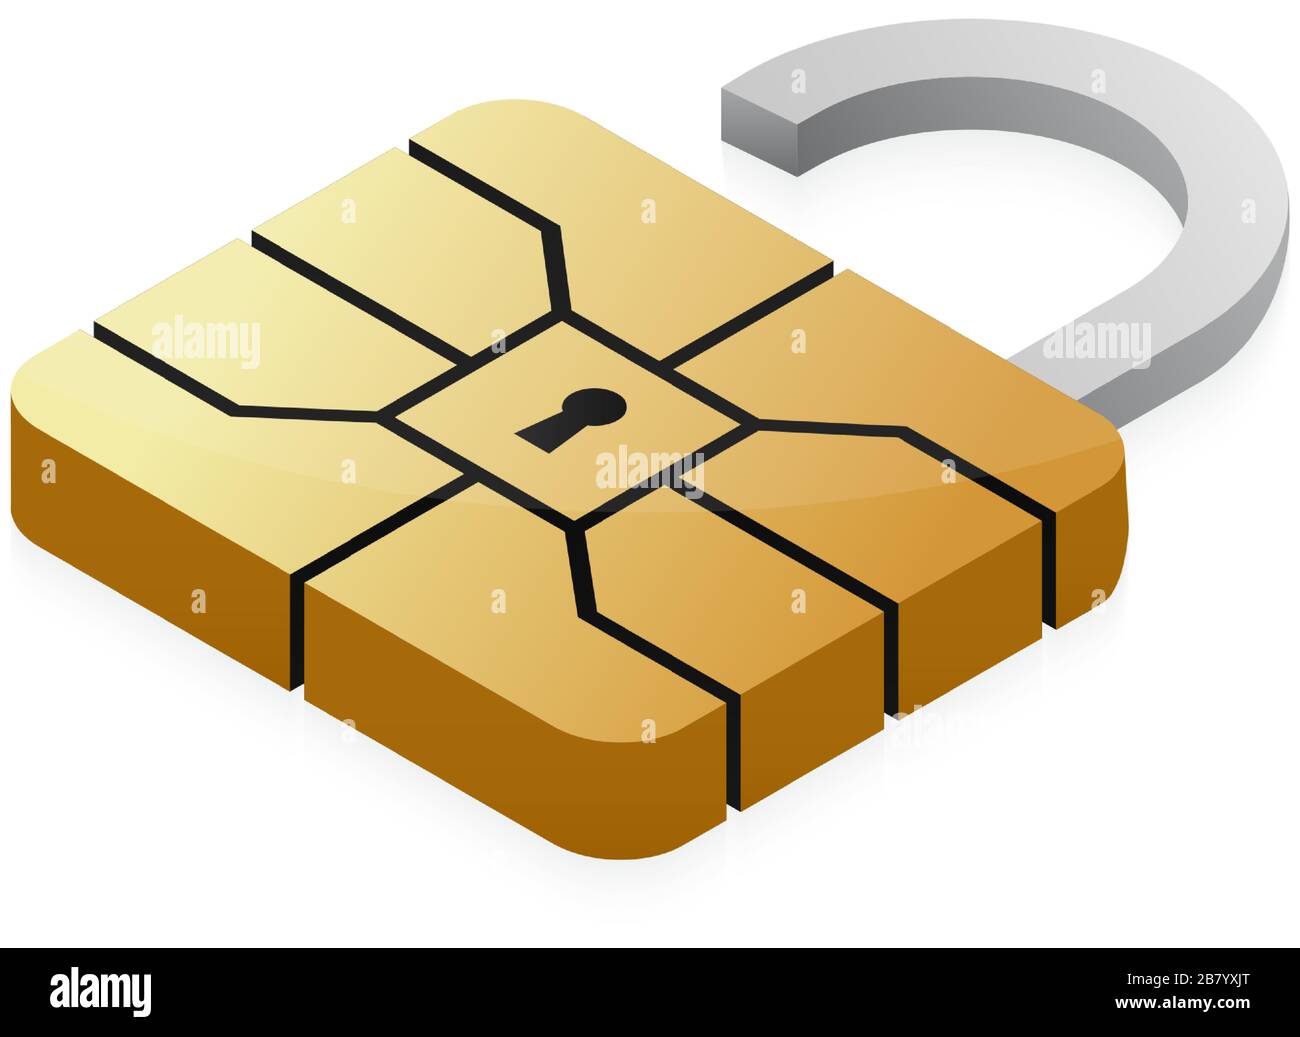 Kreditkarte EMV-Chip-Vorhängeschloss. NFC-Sicherheit für Bankzahlungen  Stock-Vektorgrafik - Alamy